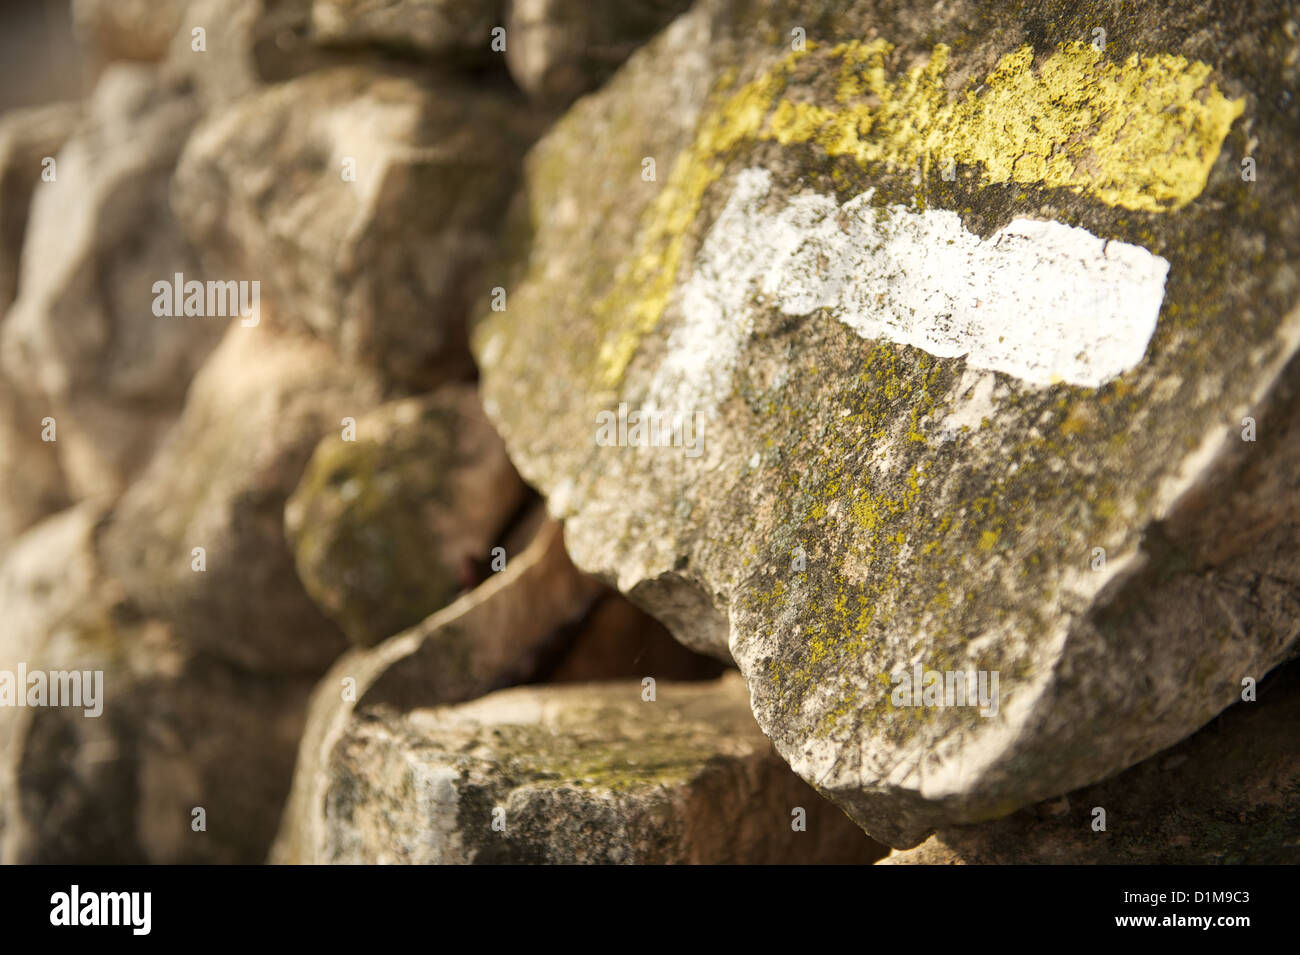 Jaune et Blanc randonnées waymarker sur mur de pierre indiquant un changement de direction ou de tourner Banque D'Images